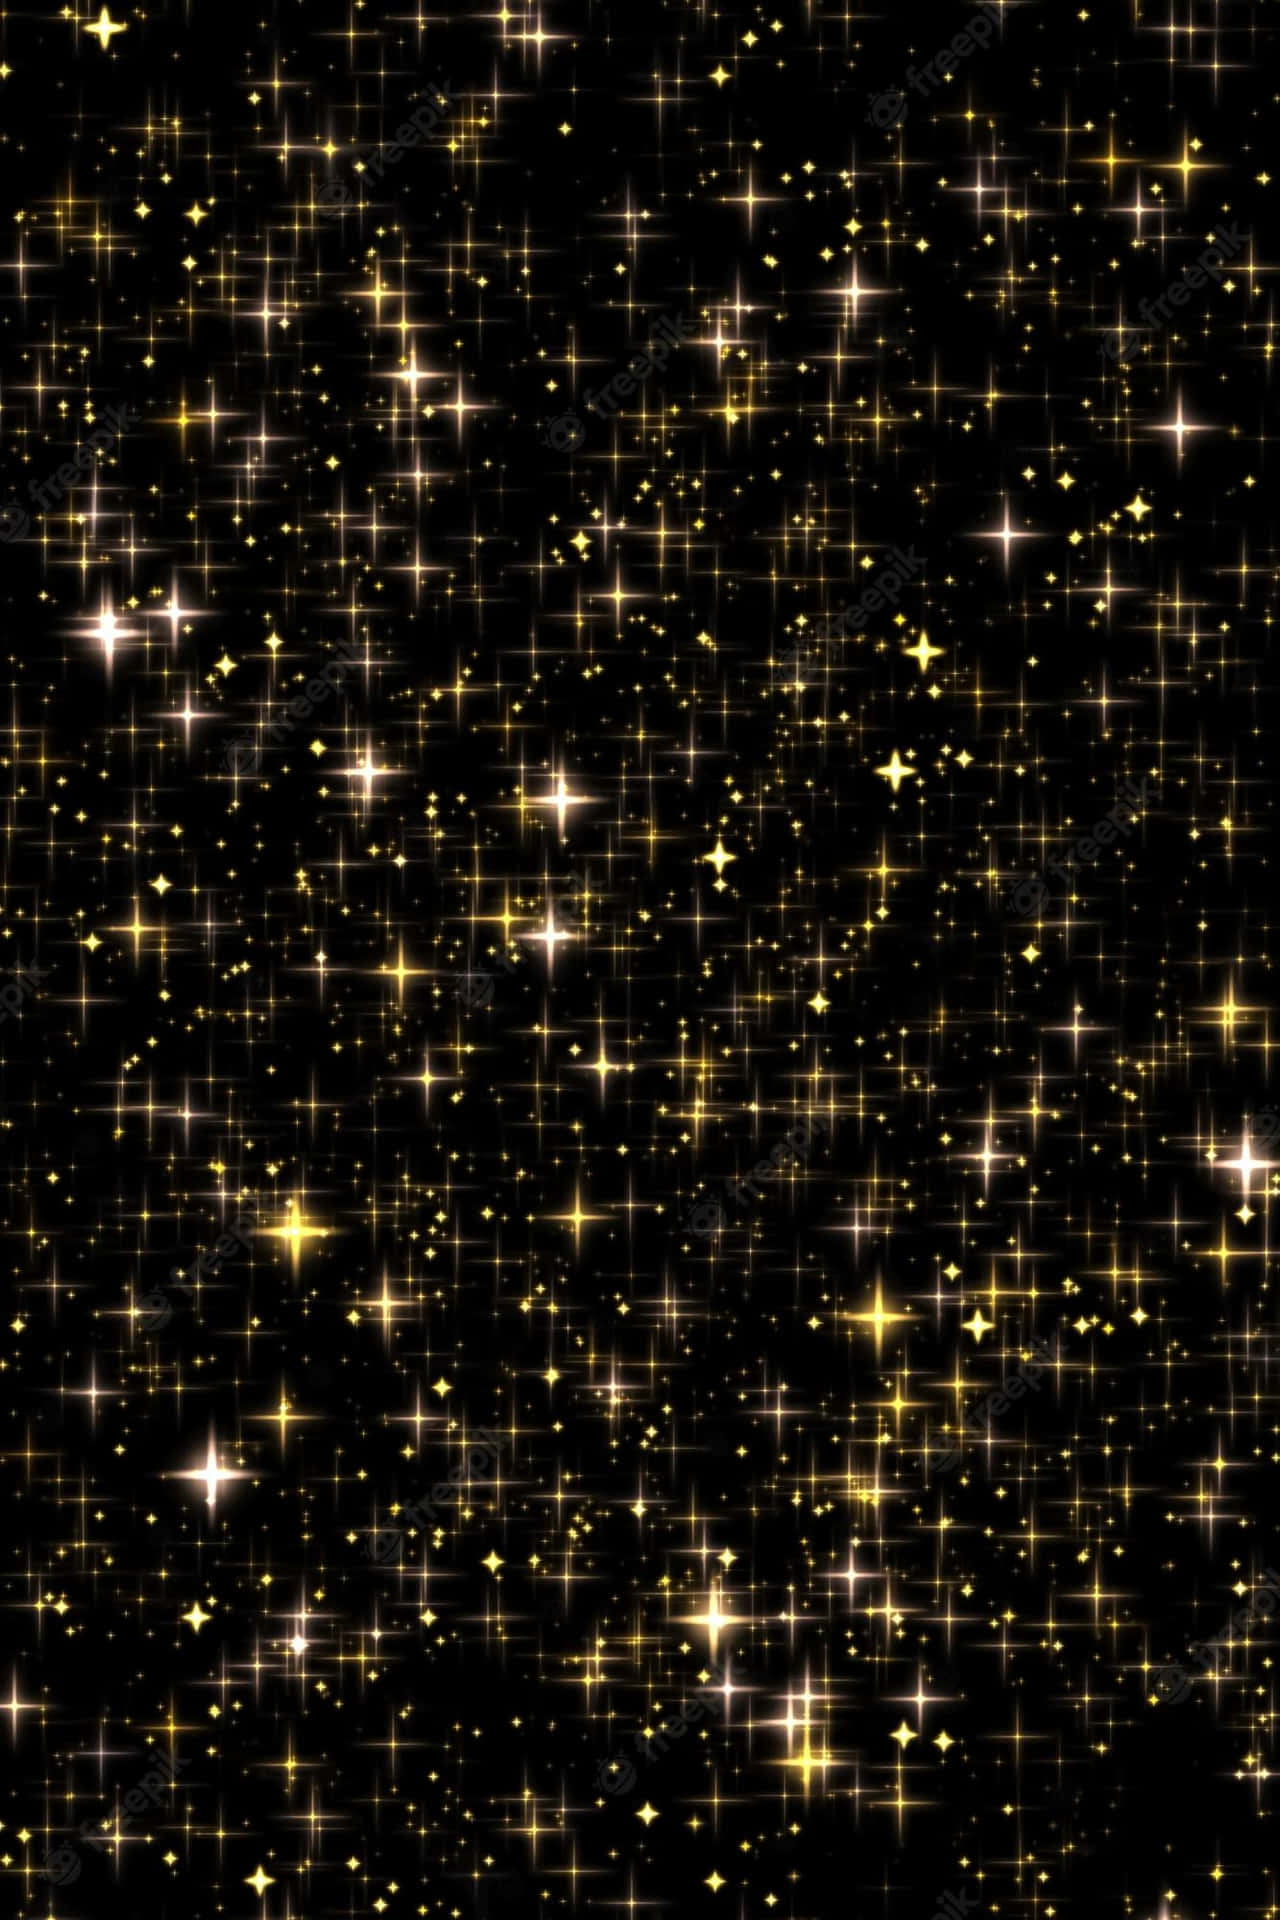 Fejre succesen med smukke gyldne stjerner. Wallpaper